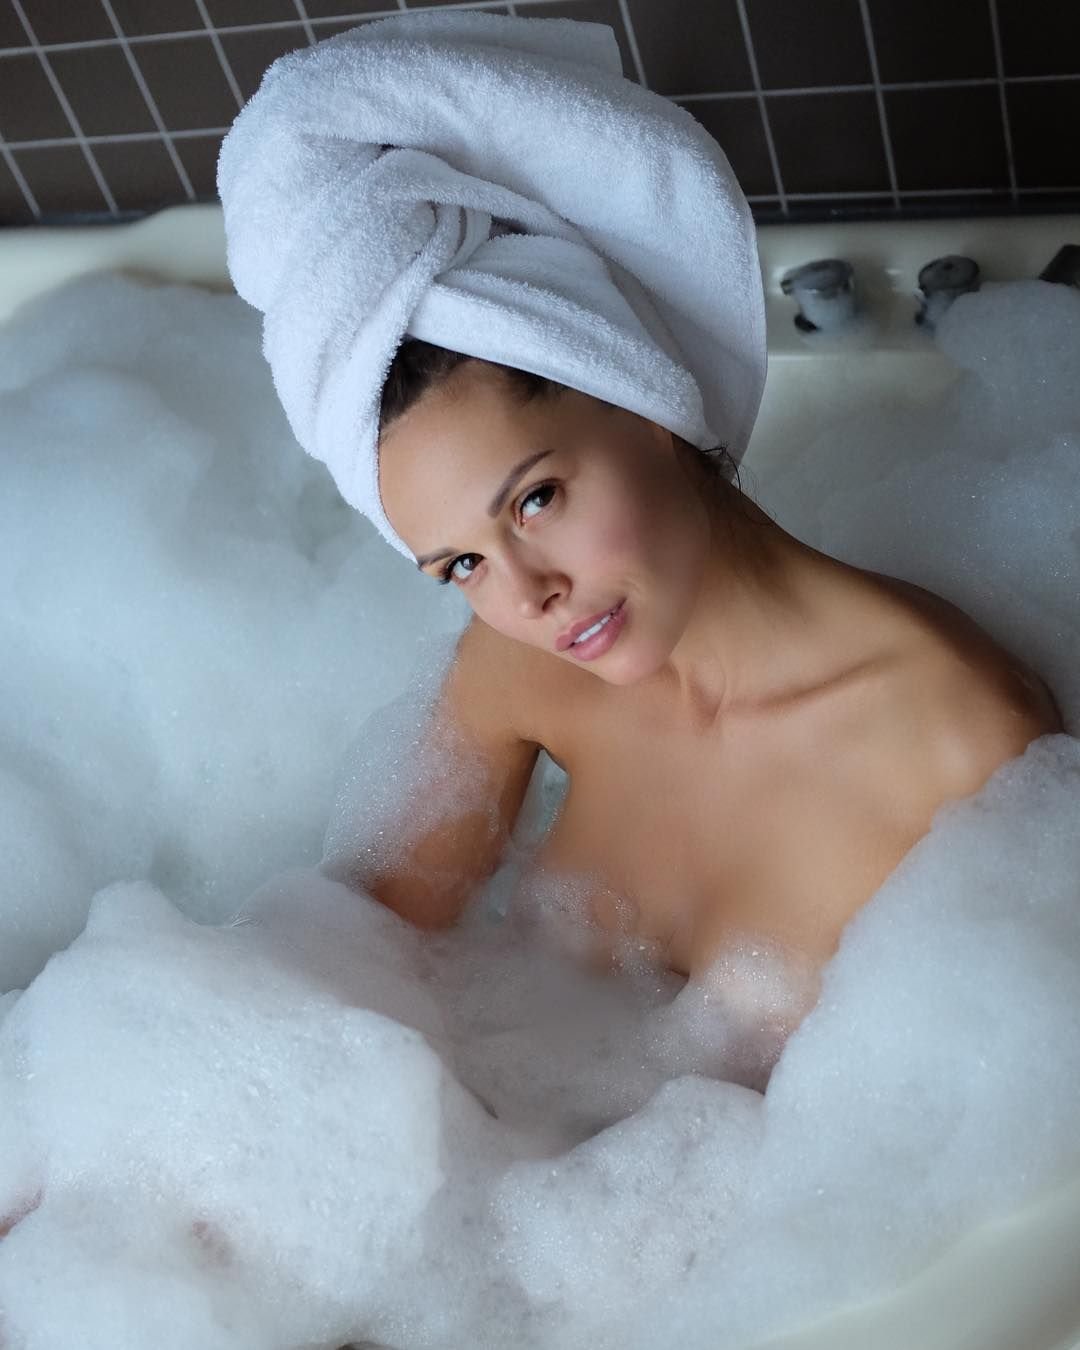 Фото девушки в полотенце в ванной